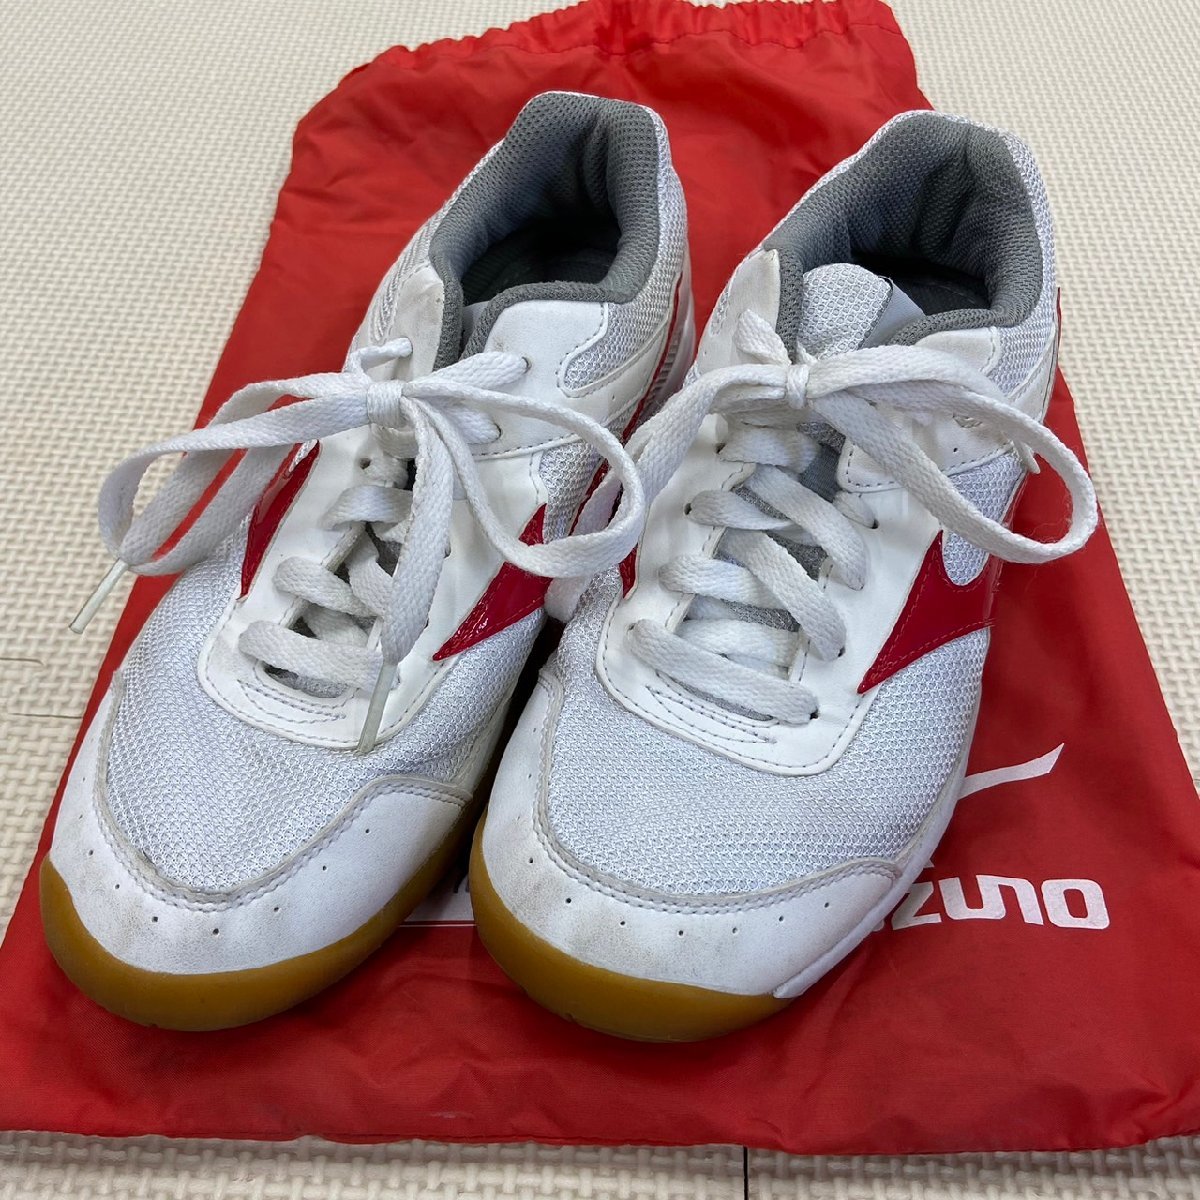 Y110/T164 ( б/у ) Tochigi префектура произведение новый .. средняя школа физическая подготовка павильон обувь 1 пункт / указание товар /24.5/MIZUNO/ красный линия / пакет имеется / обувь / белый обувь / женщина сырой ./. индустрия сырой товар 